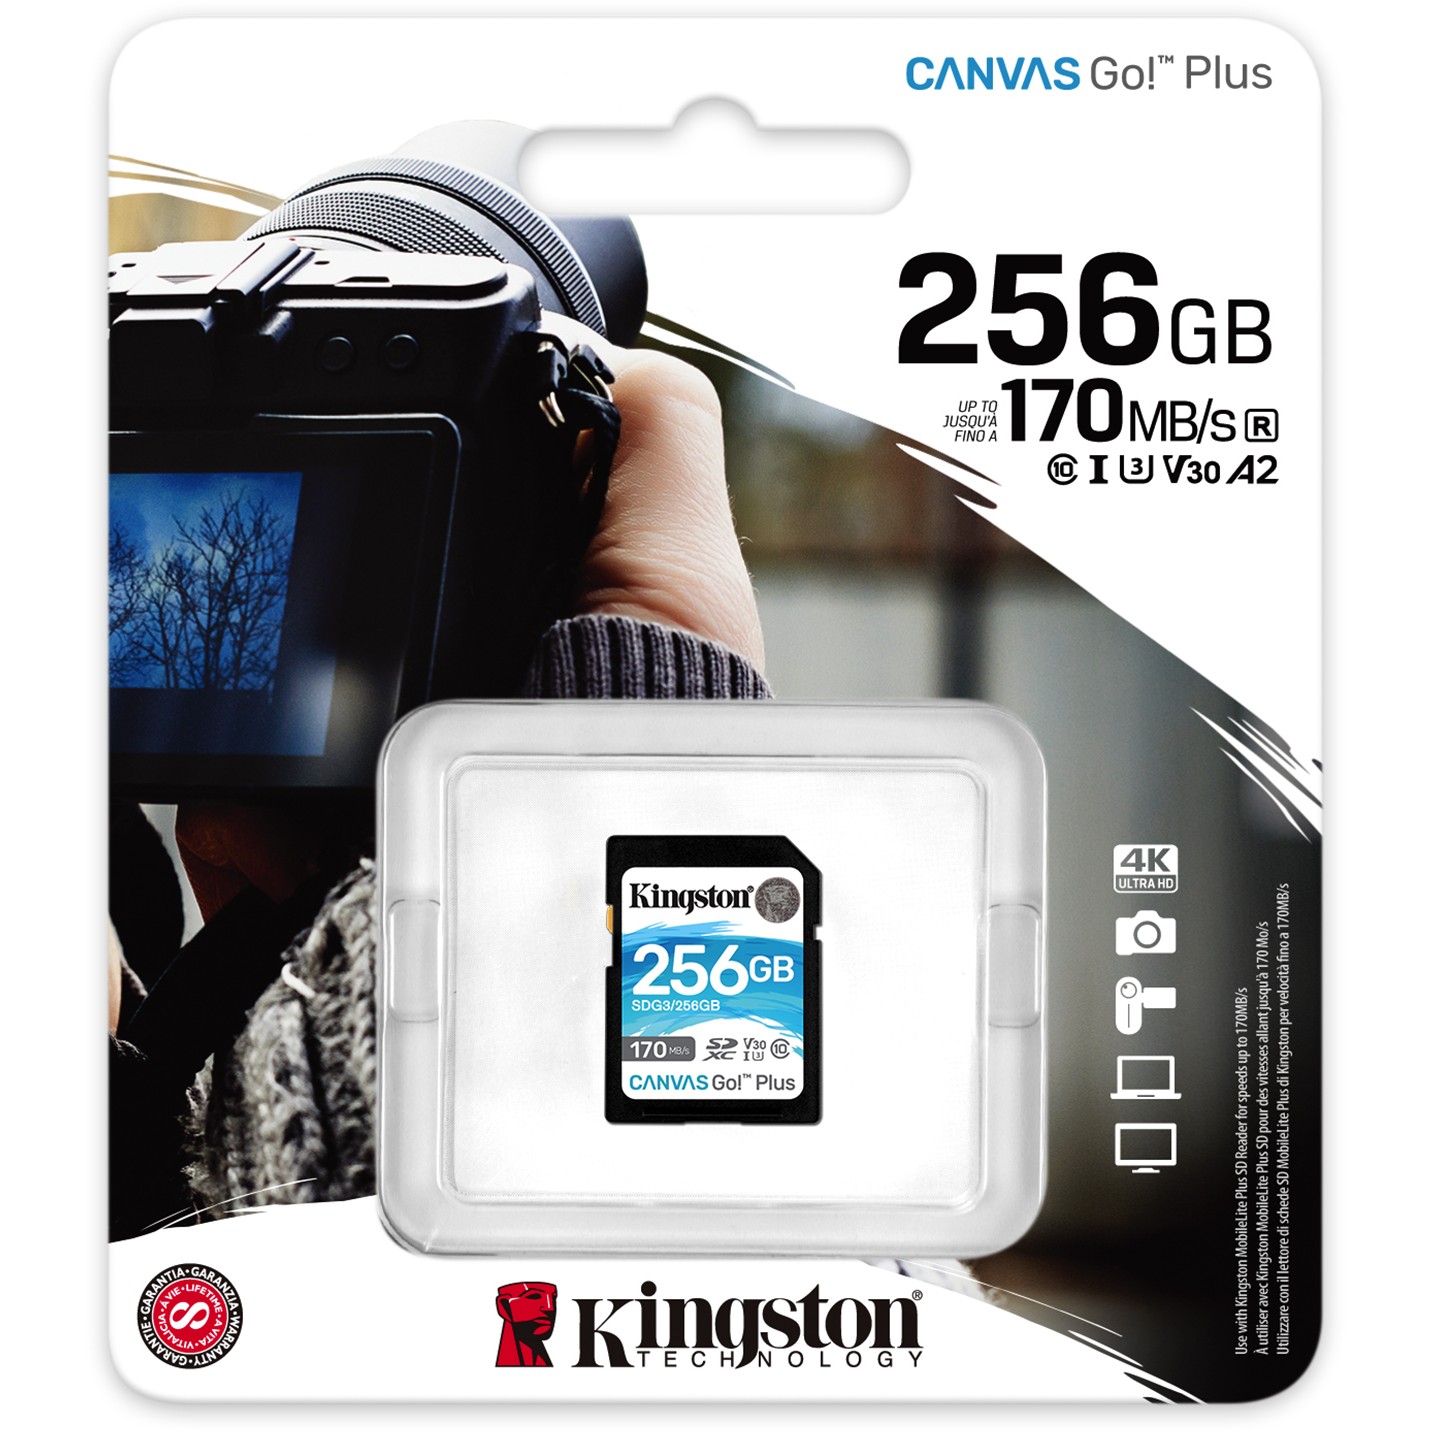 Kingston SDG3/256GB, SD-Karten, Kingston Technology Go!  (BILD3)